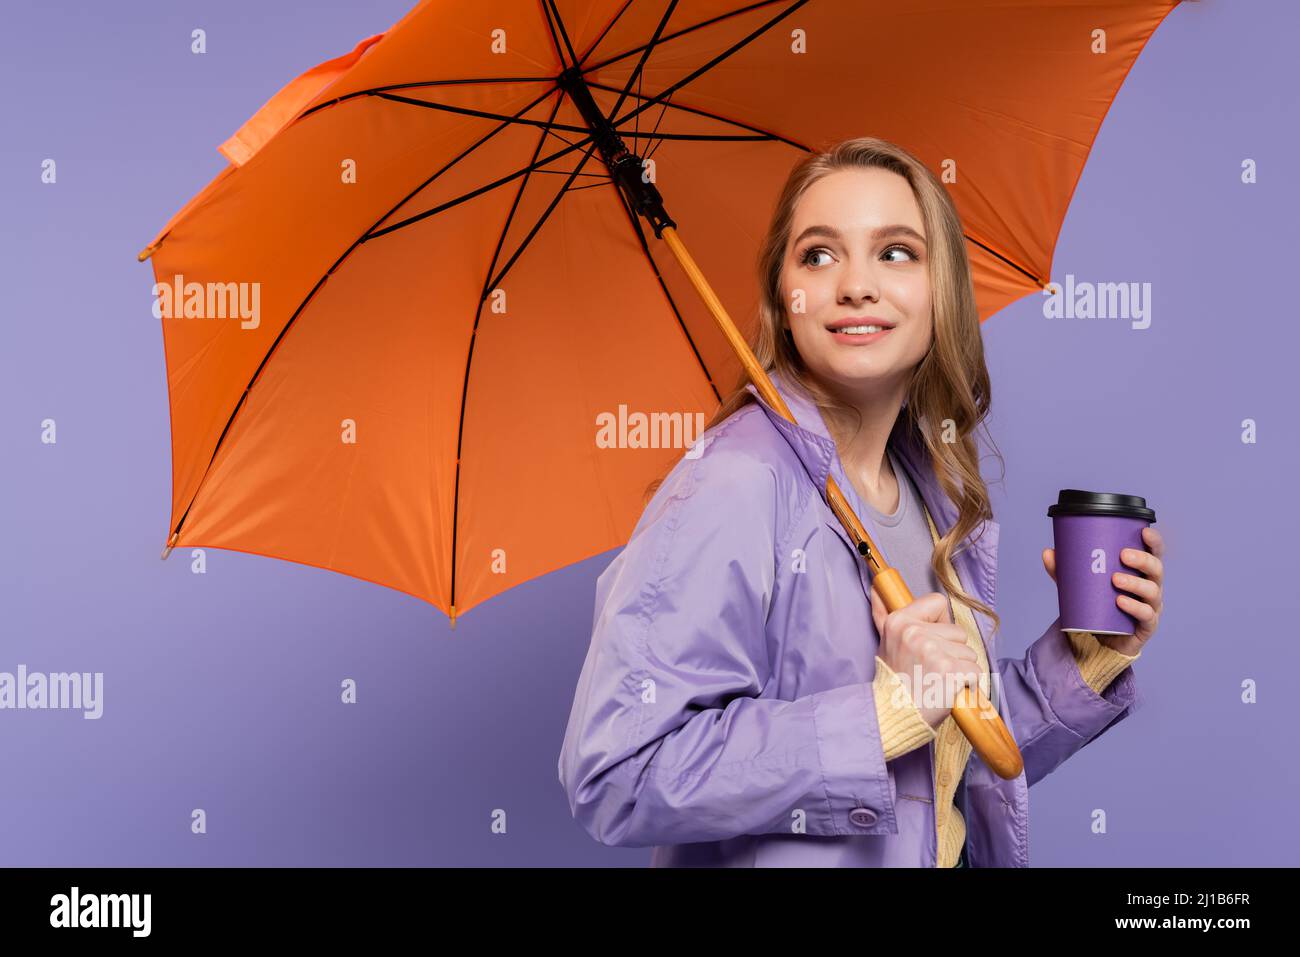 Fröhliche junge Frau im Trenchcoat, die Papierbecher hält und unter einem orangefarbenen Regenschirm auf lila isoliert steht Stockfoto